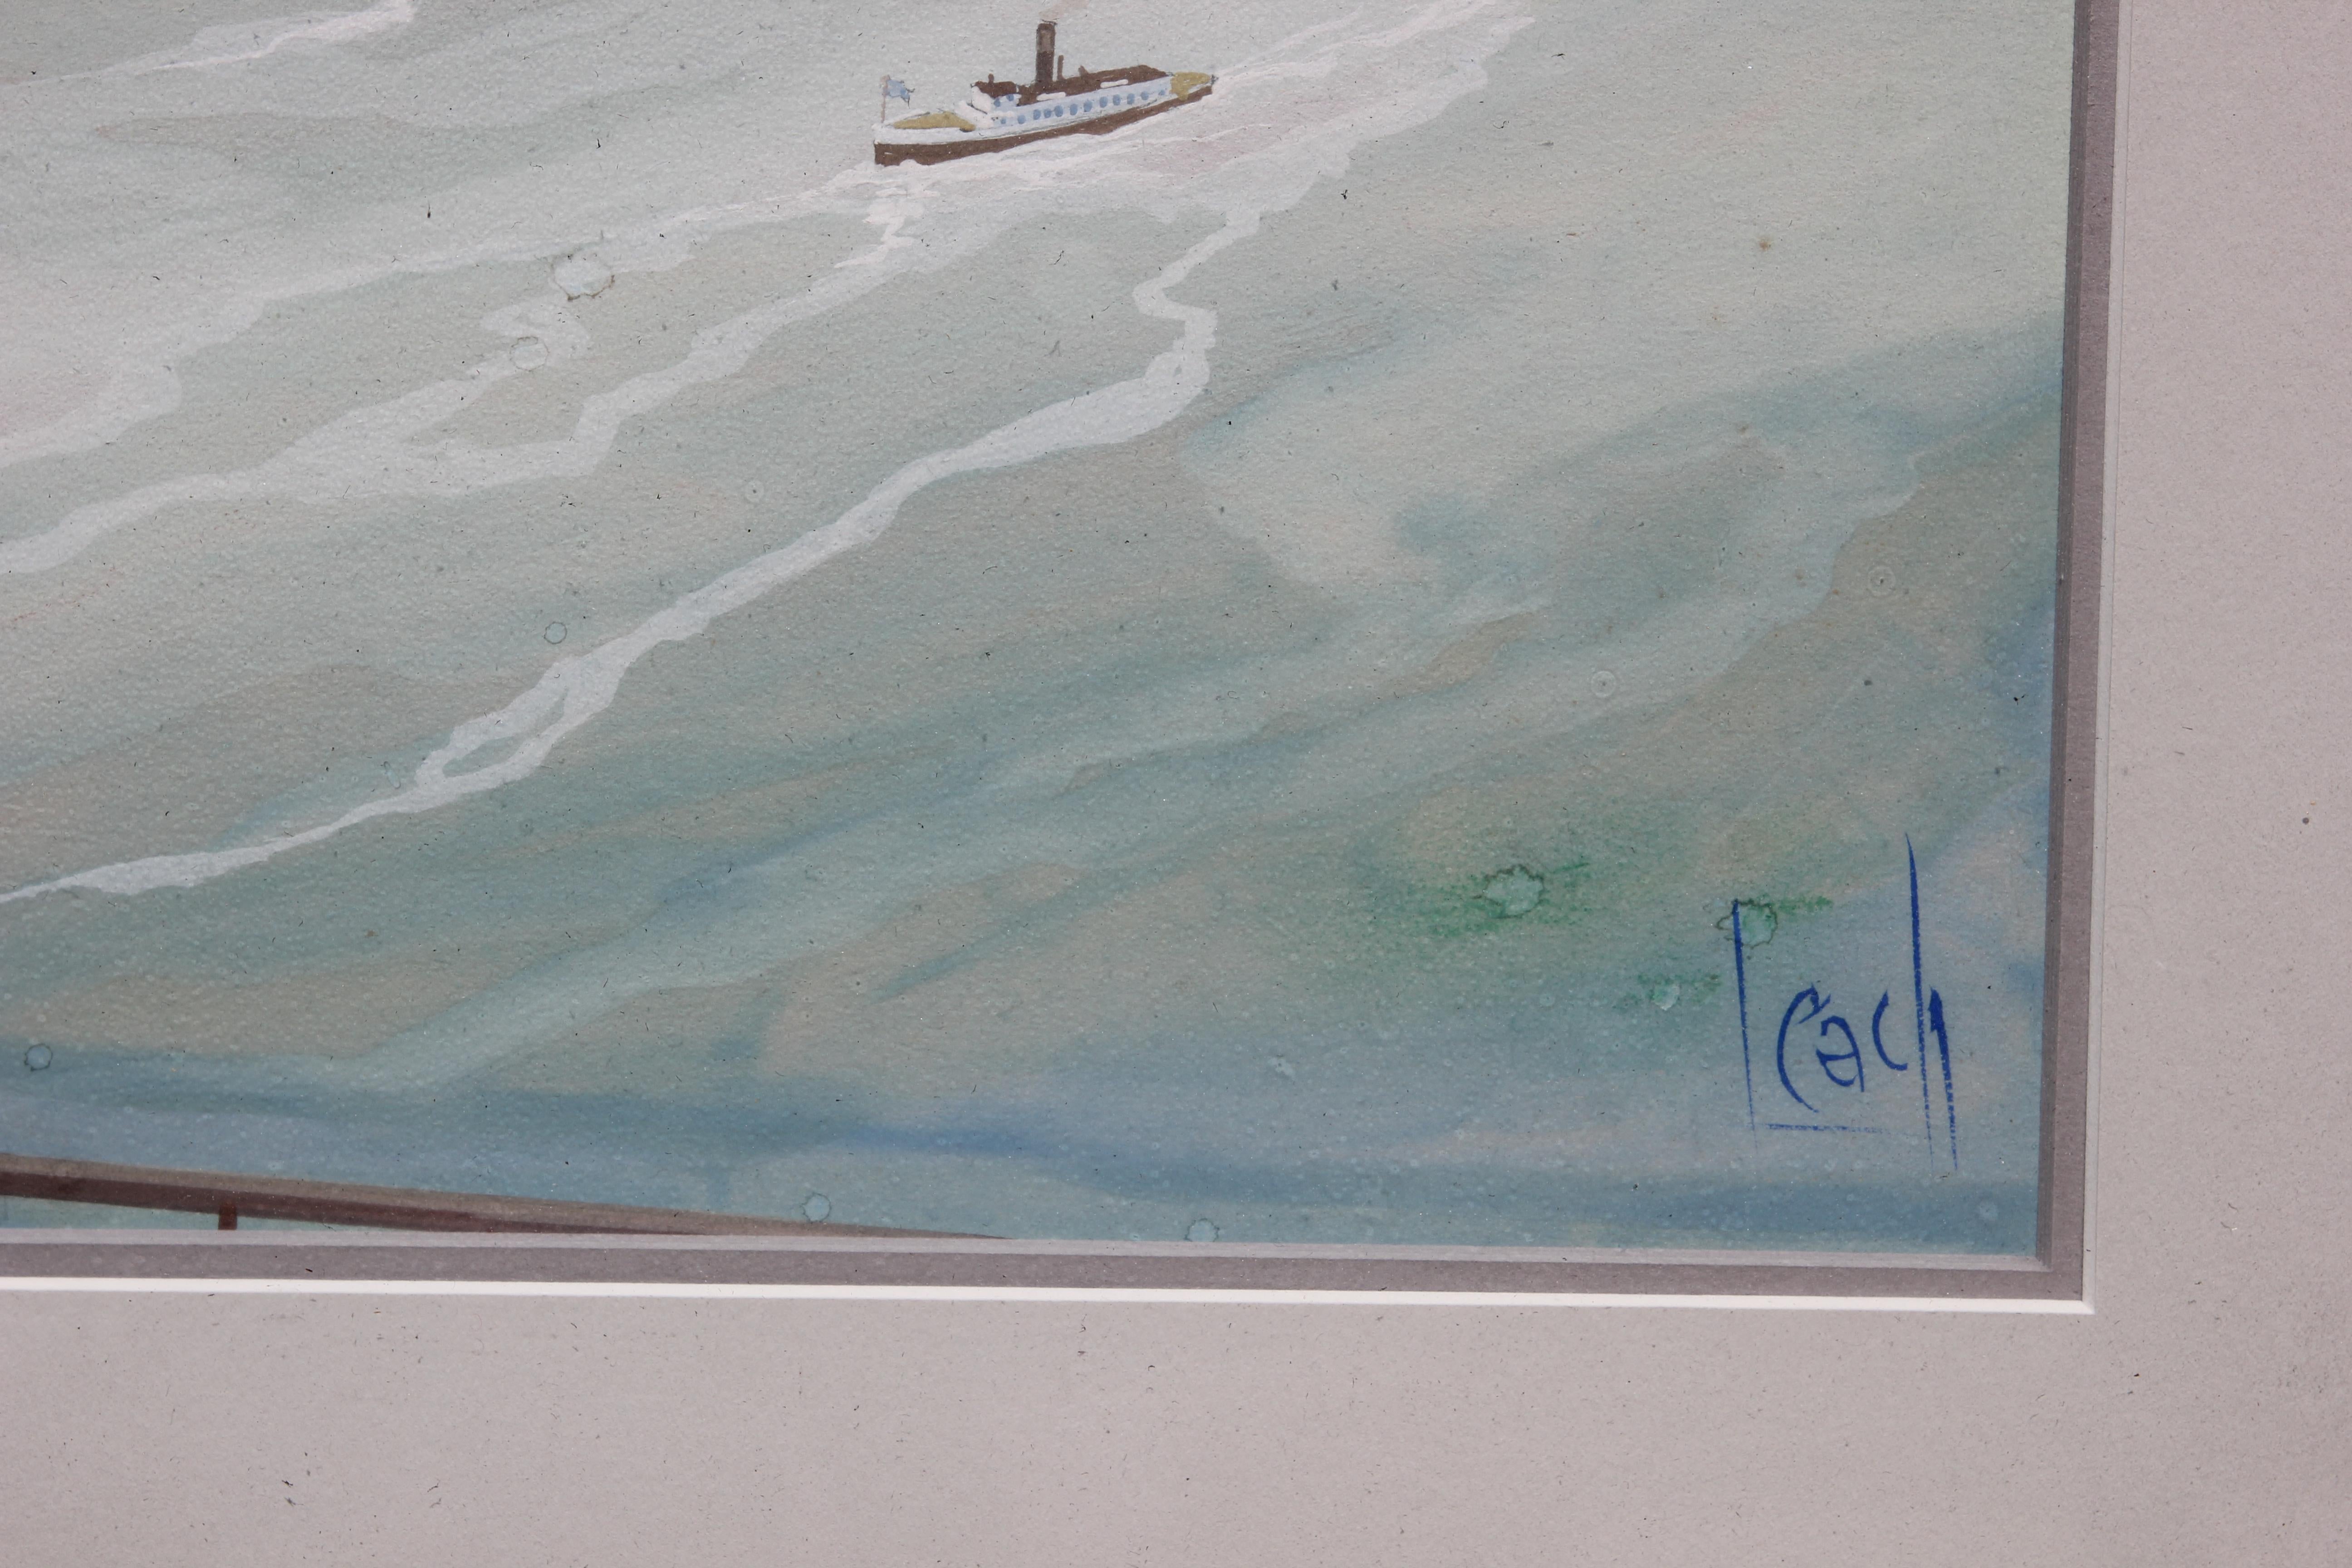 Aquarelle originale représentant les chutes de Niagra en hiver et au printemps. La paire de tableaux est signée par l'artiste dans le coin inférieur. Les tableaux ont des cadres dorés assortis avec des matelas blancs.
Dimensions sans cadre : H 18 in